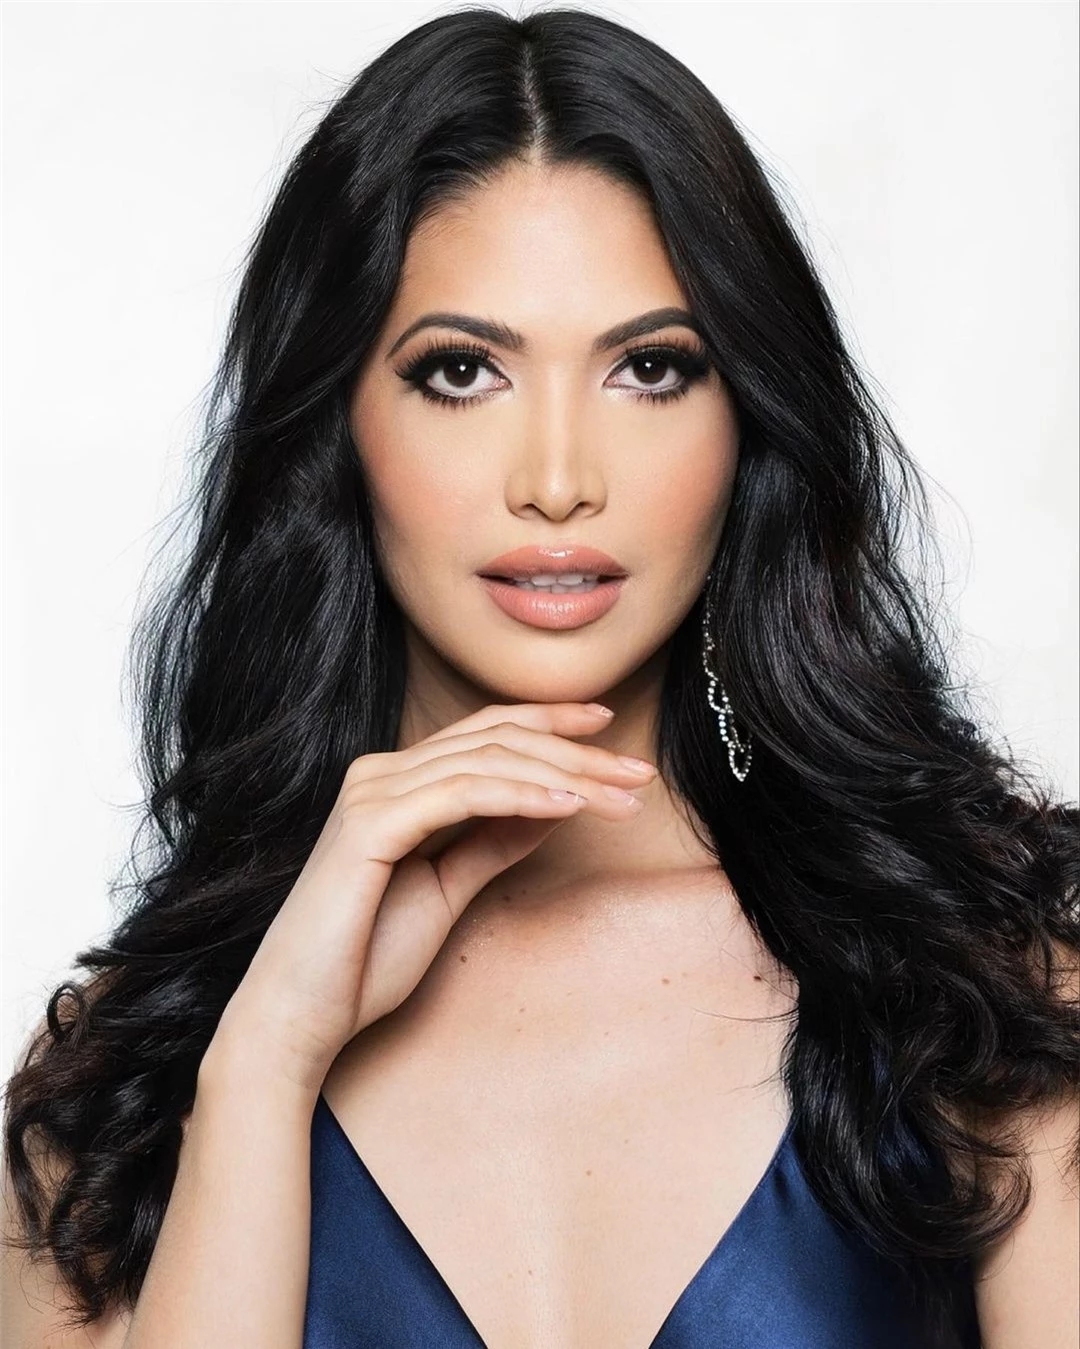 Tân Hoa hậu Hòa bình Ecuador có hình thể quyến rũ nhưng gương mặt bị chê già ảnh 21